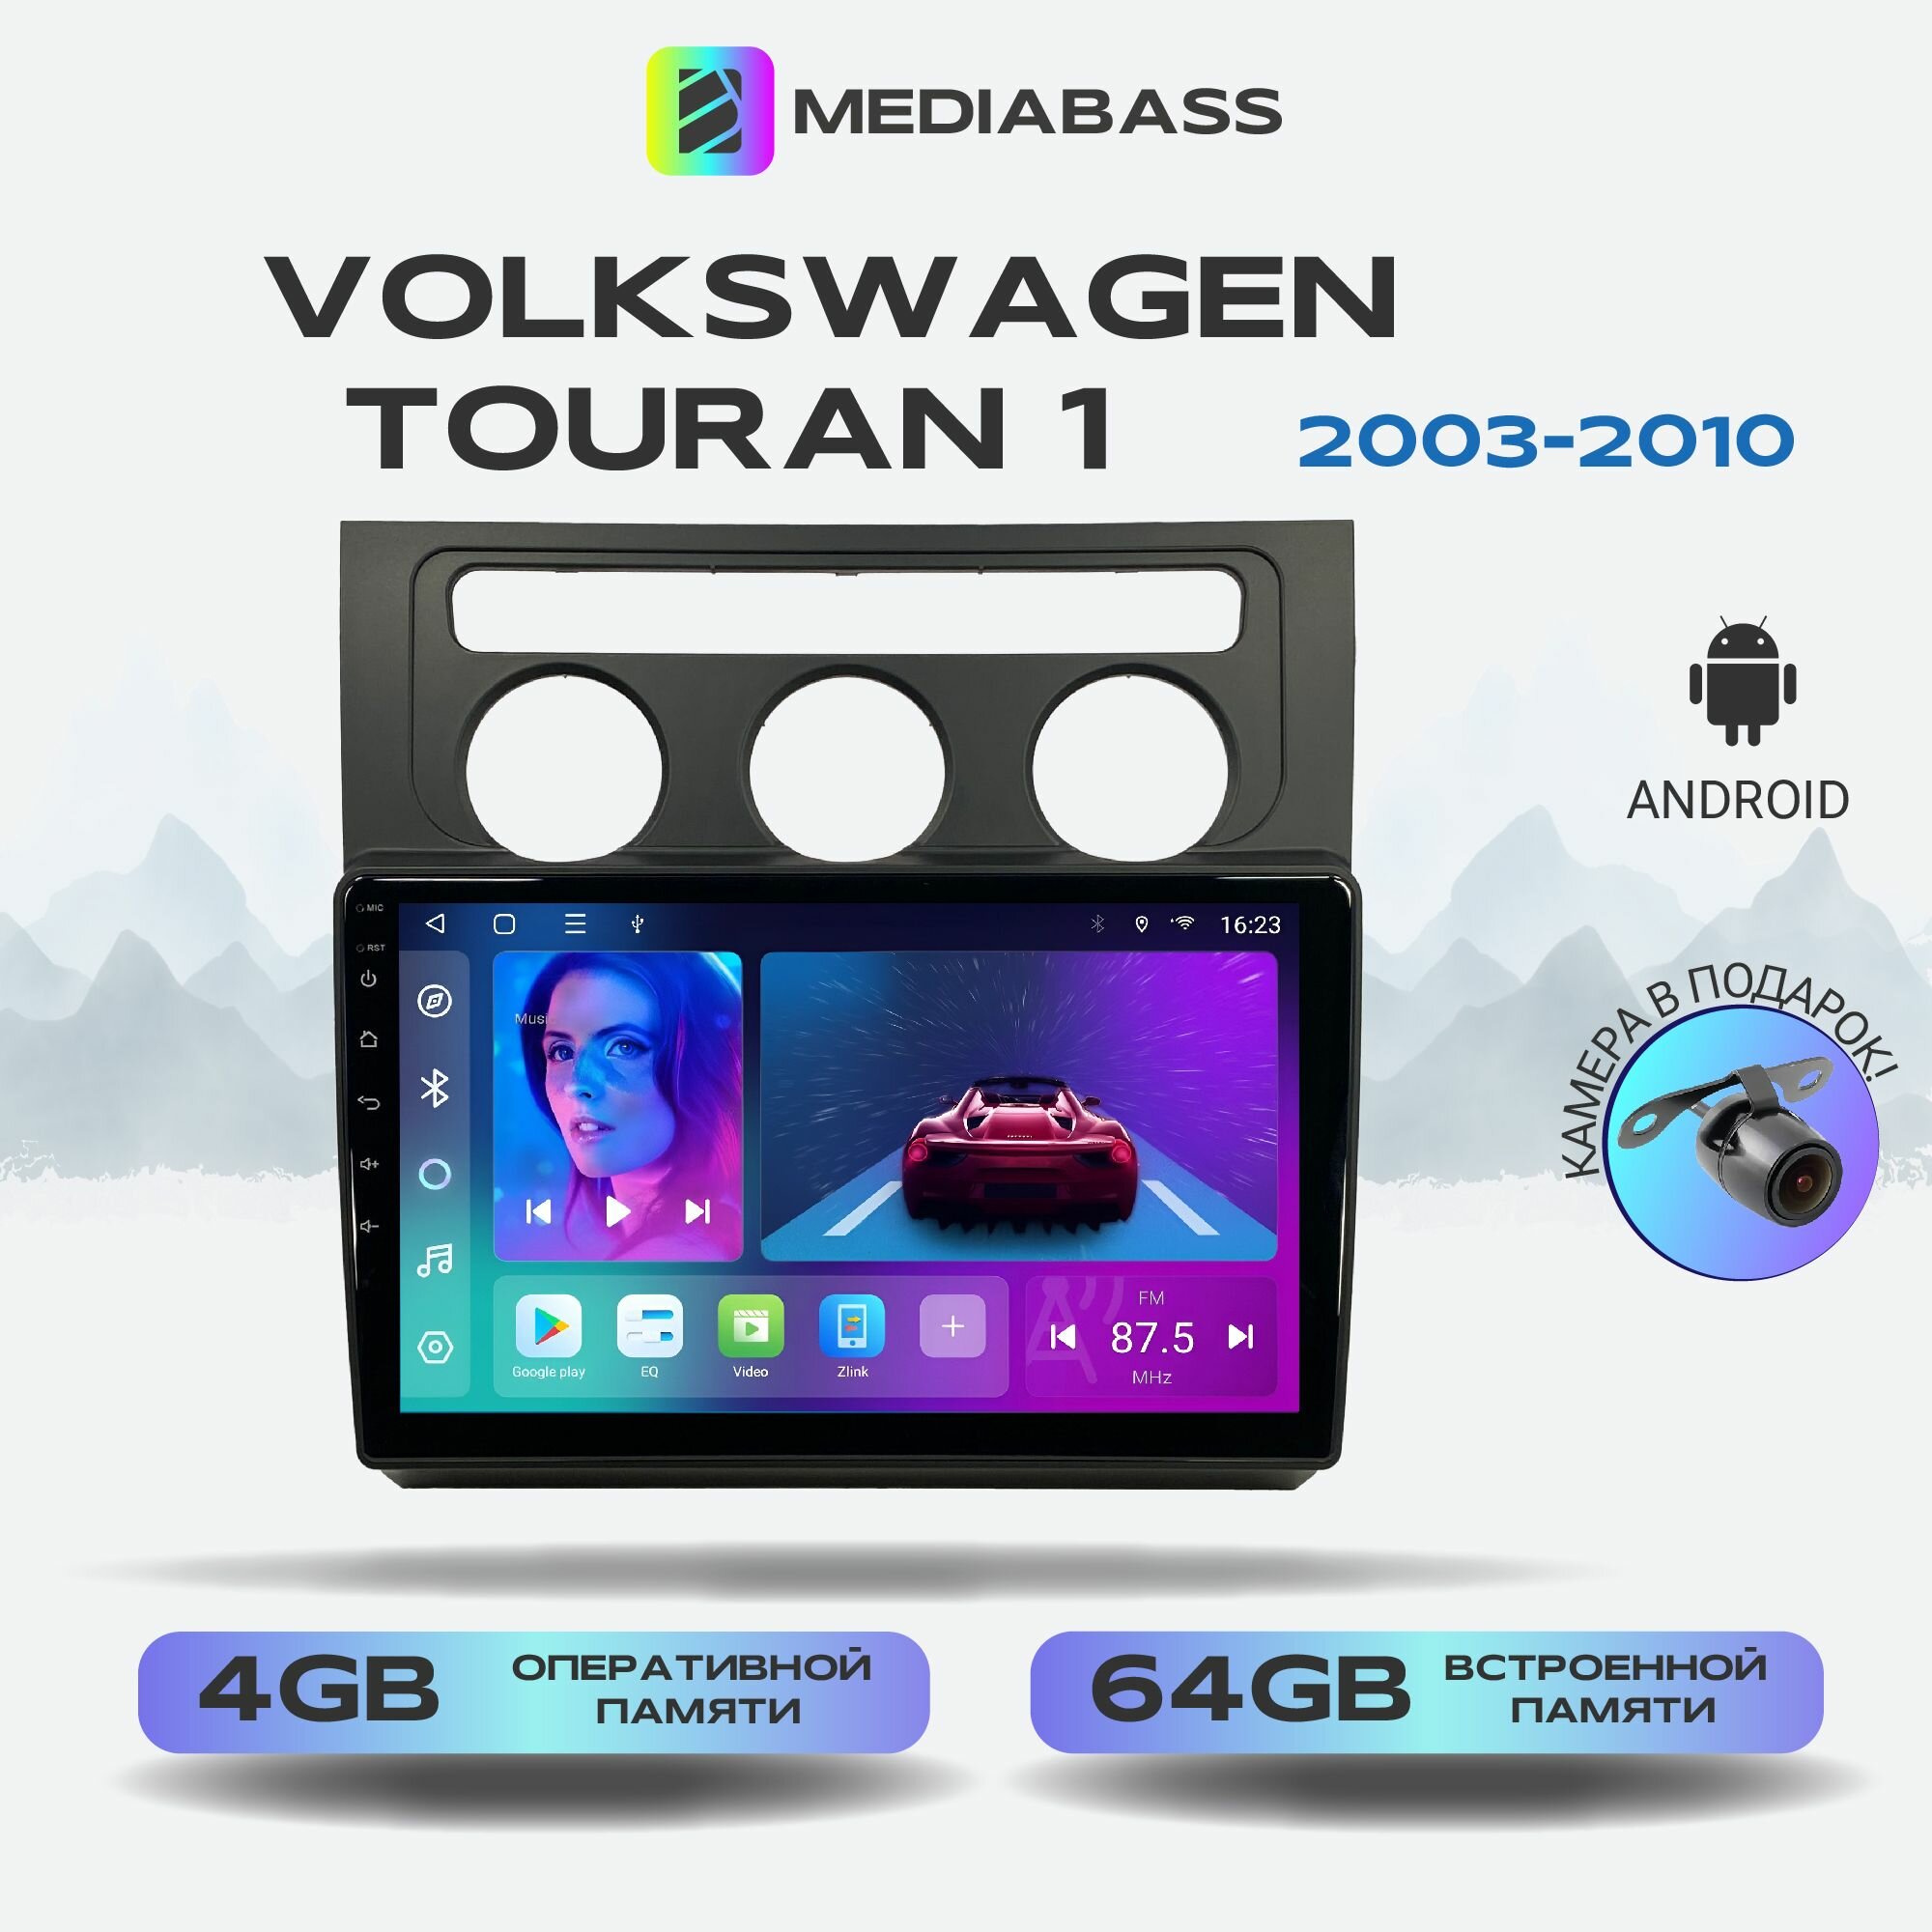 Автомагнитола Mediabass Volkswagen Touran 1 2003-2010, Android 12, 4/64GB, 8-ядерный процессор, DSP, 4G модем, чип-усилитель TDA7851 / Фольксваген Тоуарн 1